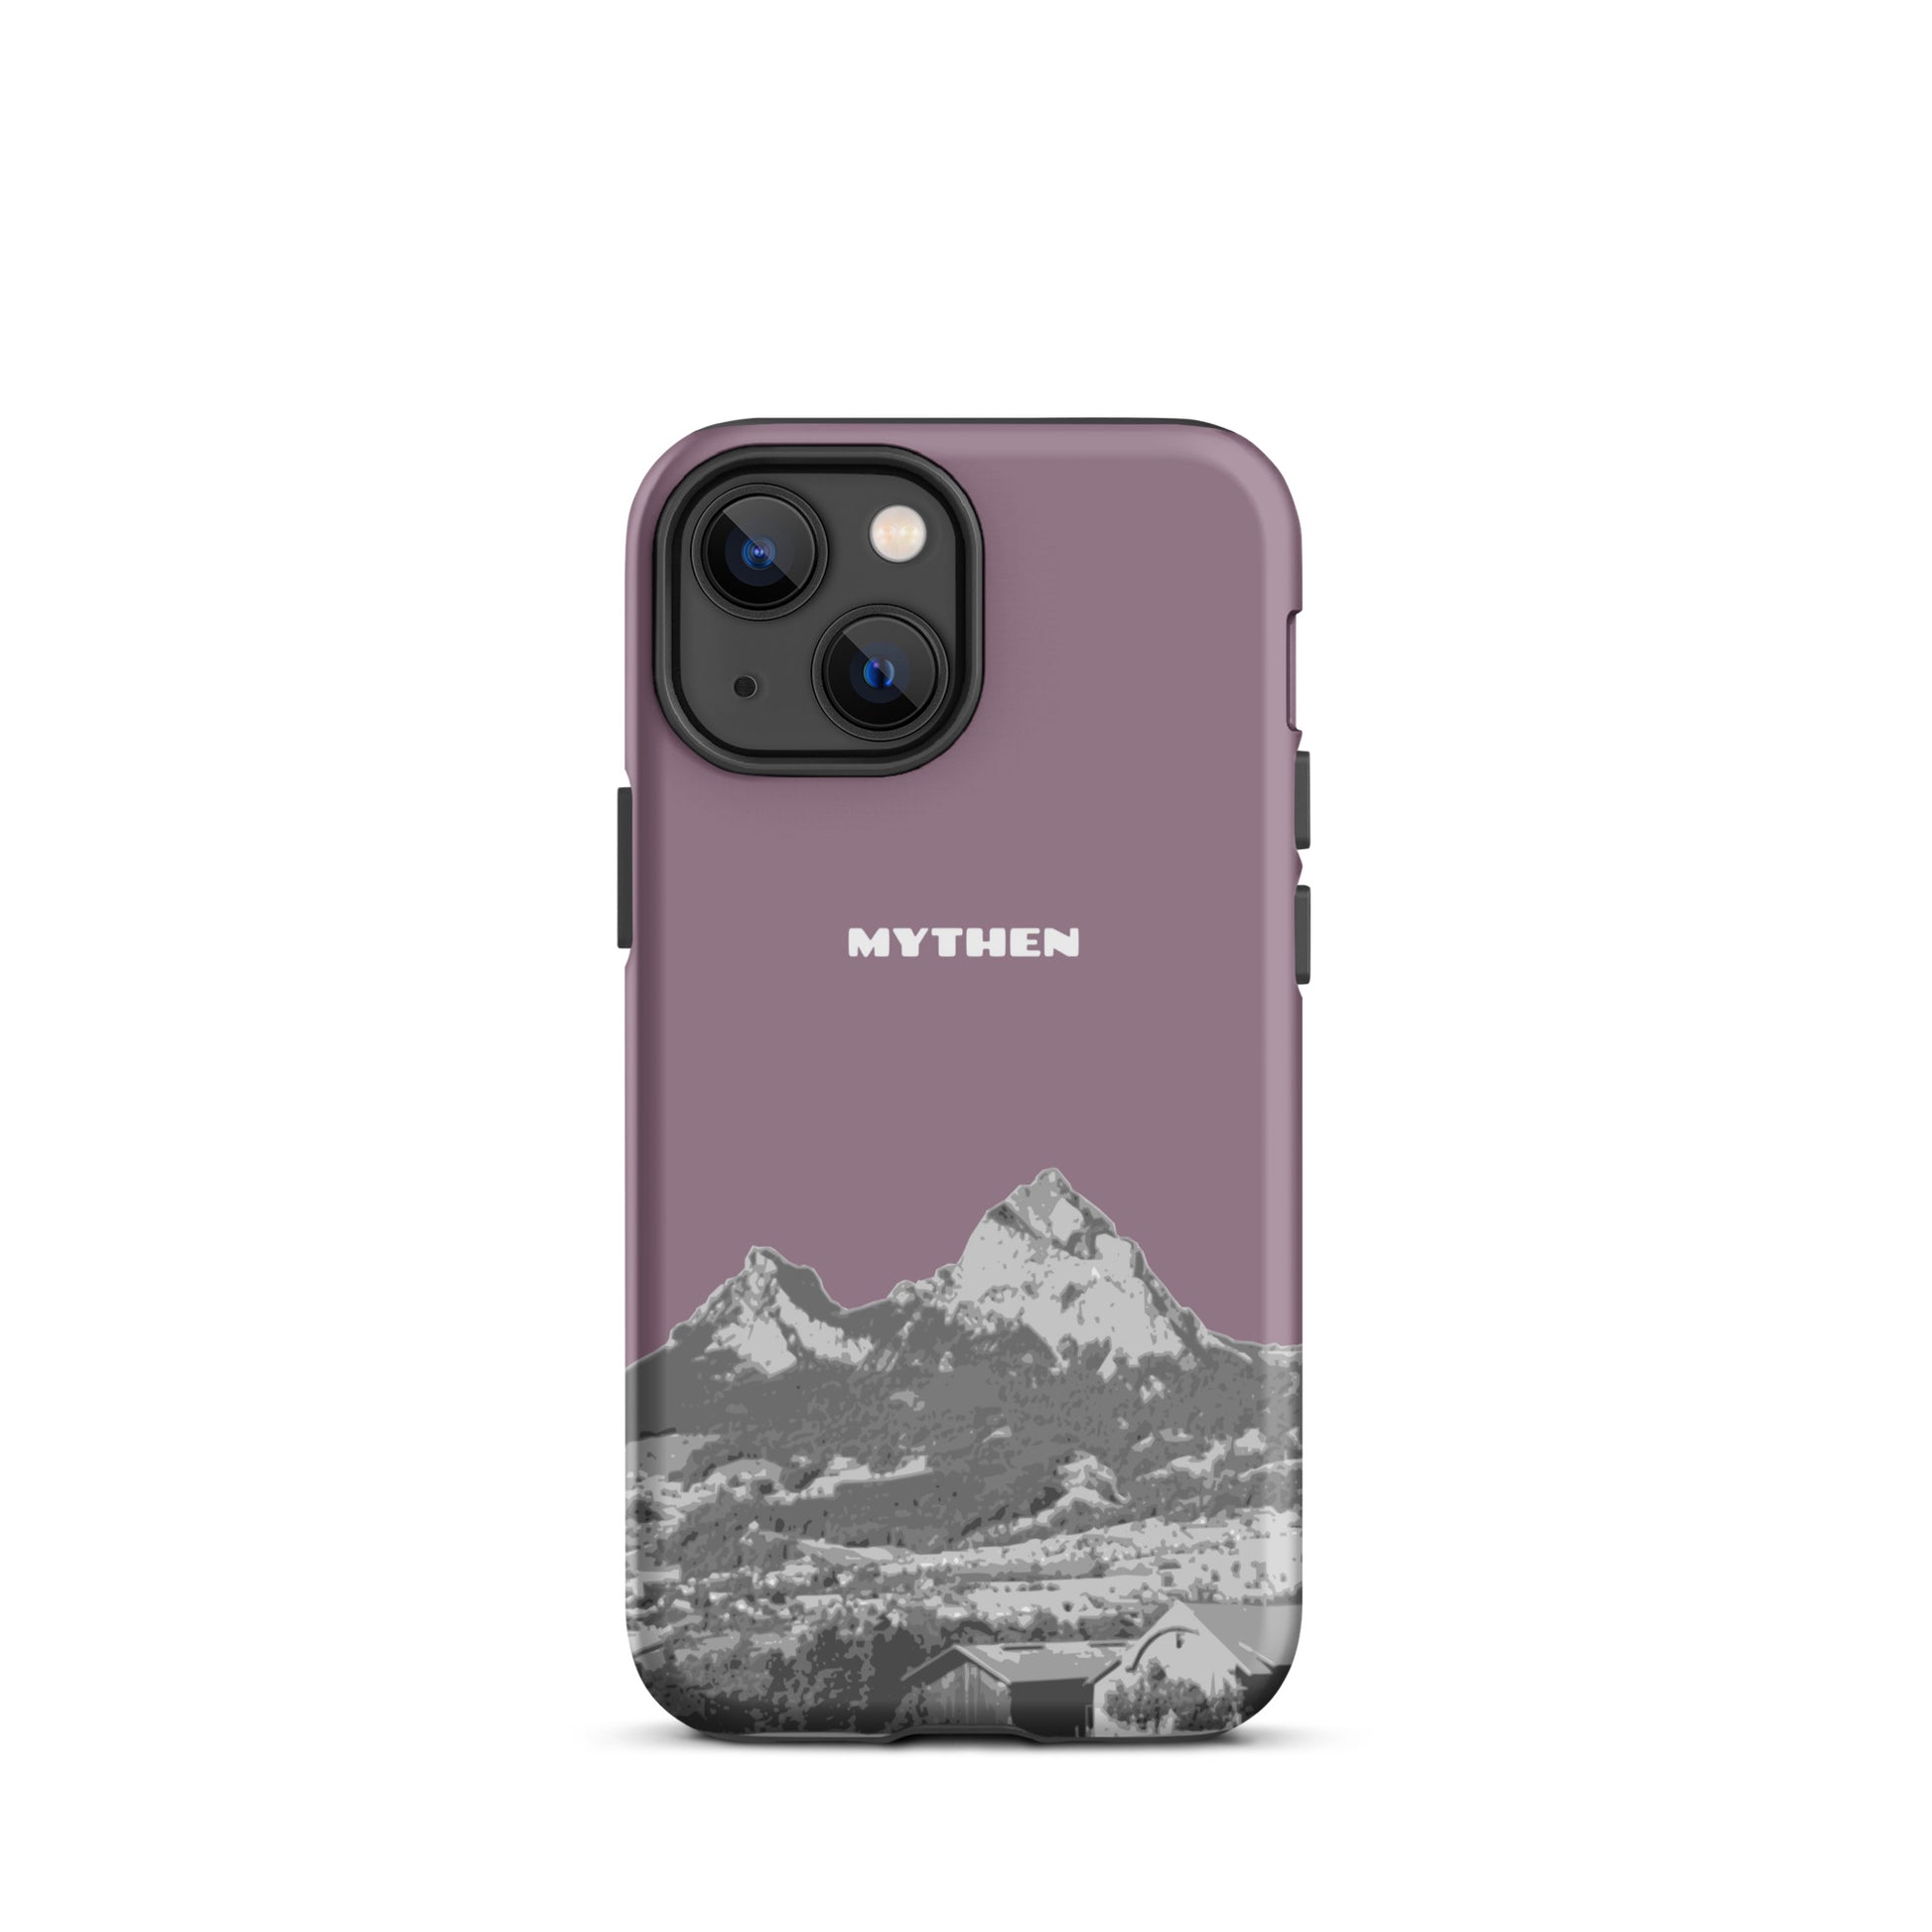 Hülle für das iPhone 13 mini von Apple in der Farbe Pastellviolett, die den Grossen Mythen und den Kleinen Mythen bei Schwyz zeigt. 